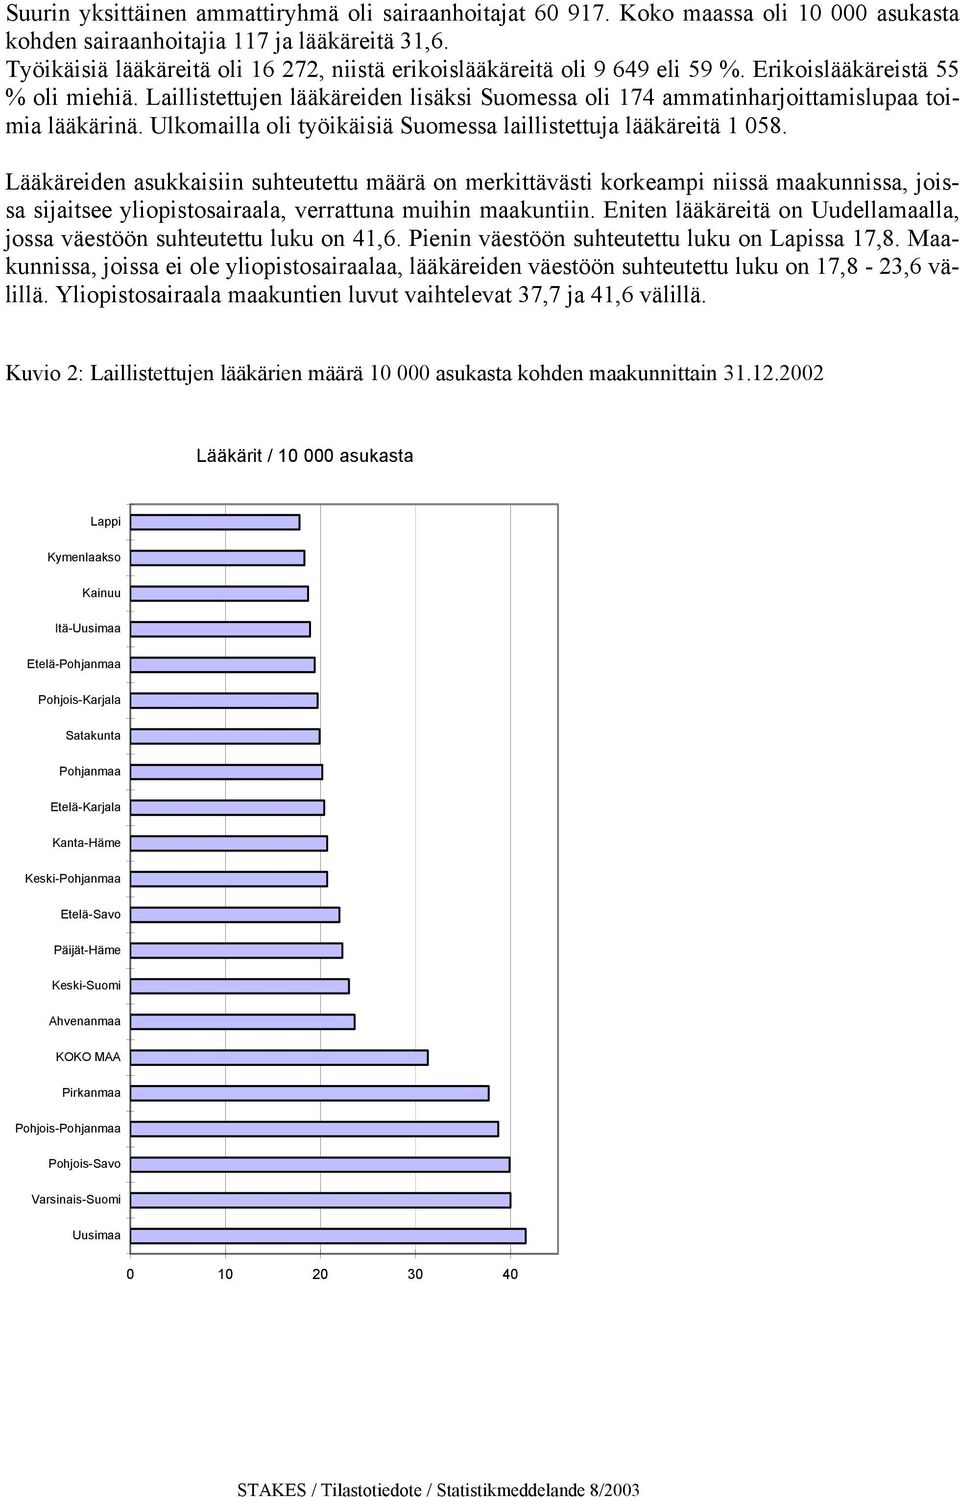 Laillistettujen lääkäreiden lisäksi Suomessa oli 174 ammatinharjoittamislupaa toimia lääkärinä. Ulkomailla oli työikäisiä Suomessa laillistettuja lääkäreitä 1 058.